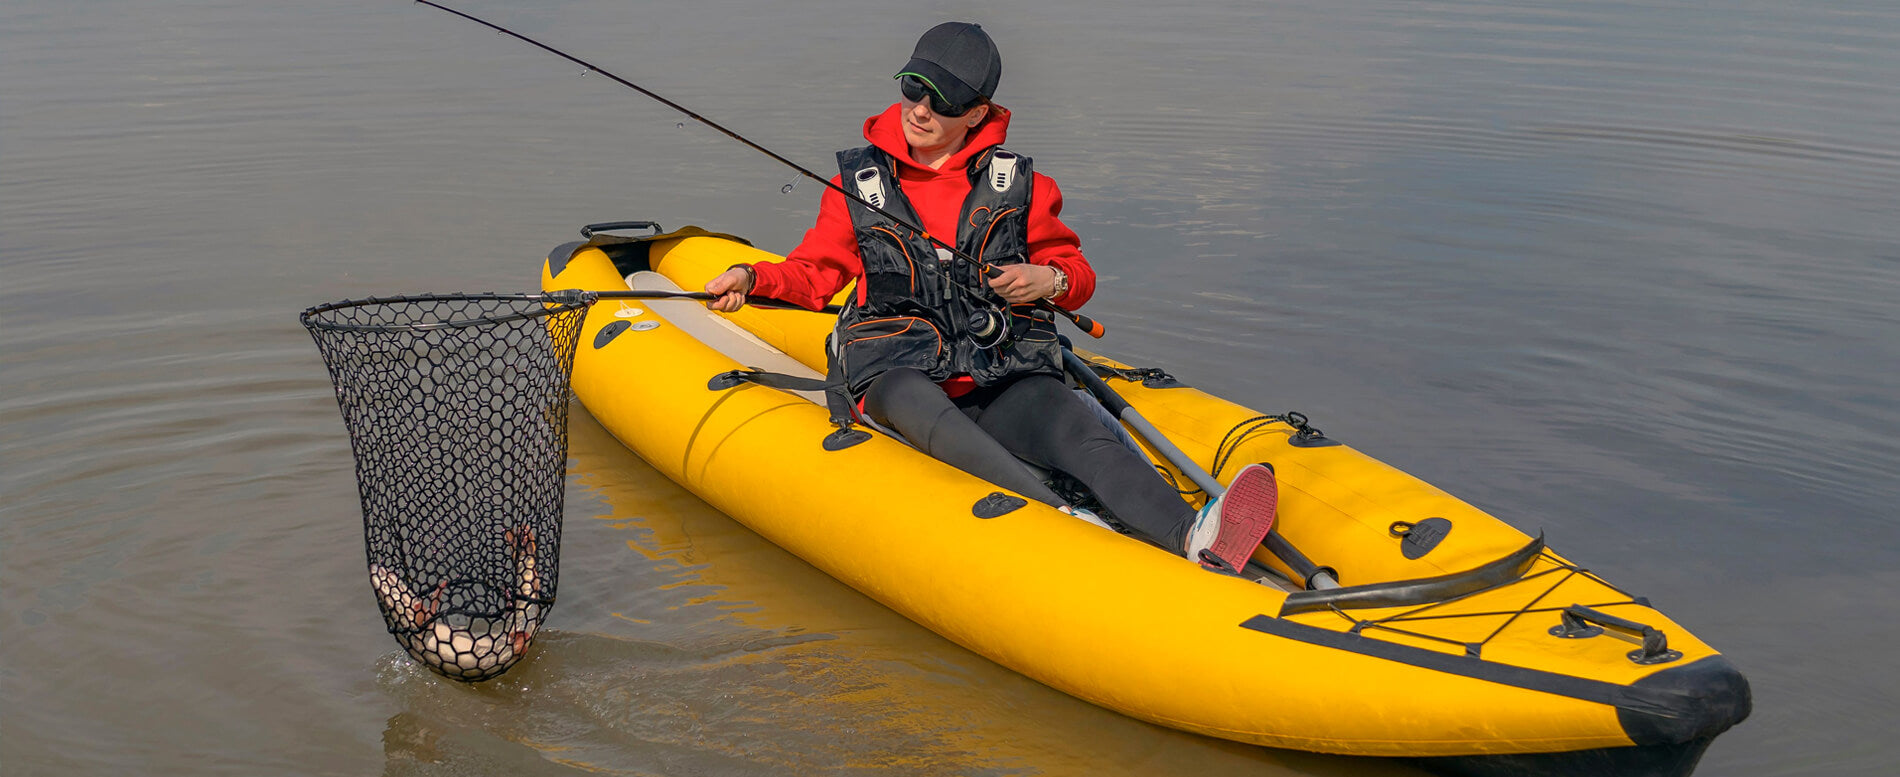 Universal Adjustable Detachable Comfortable Kayak Boat Fishing